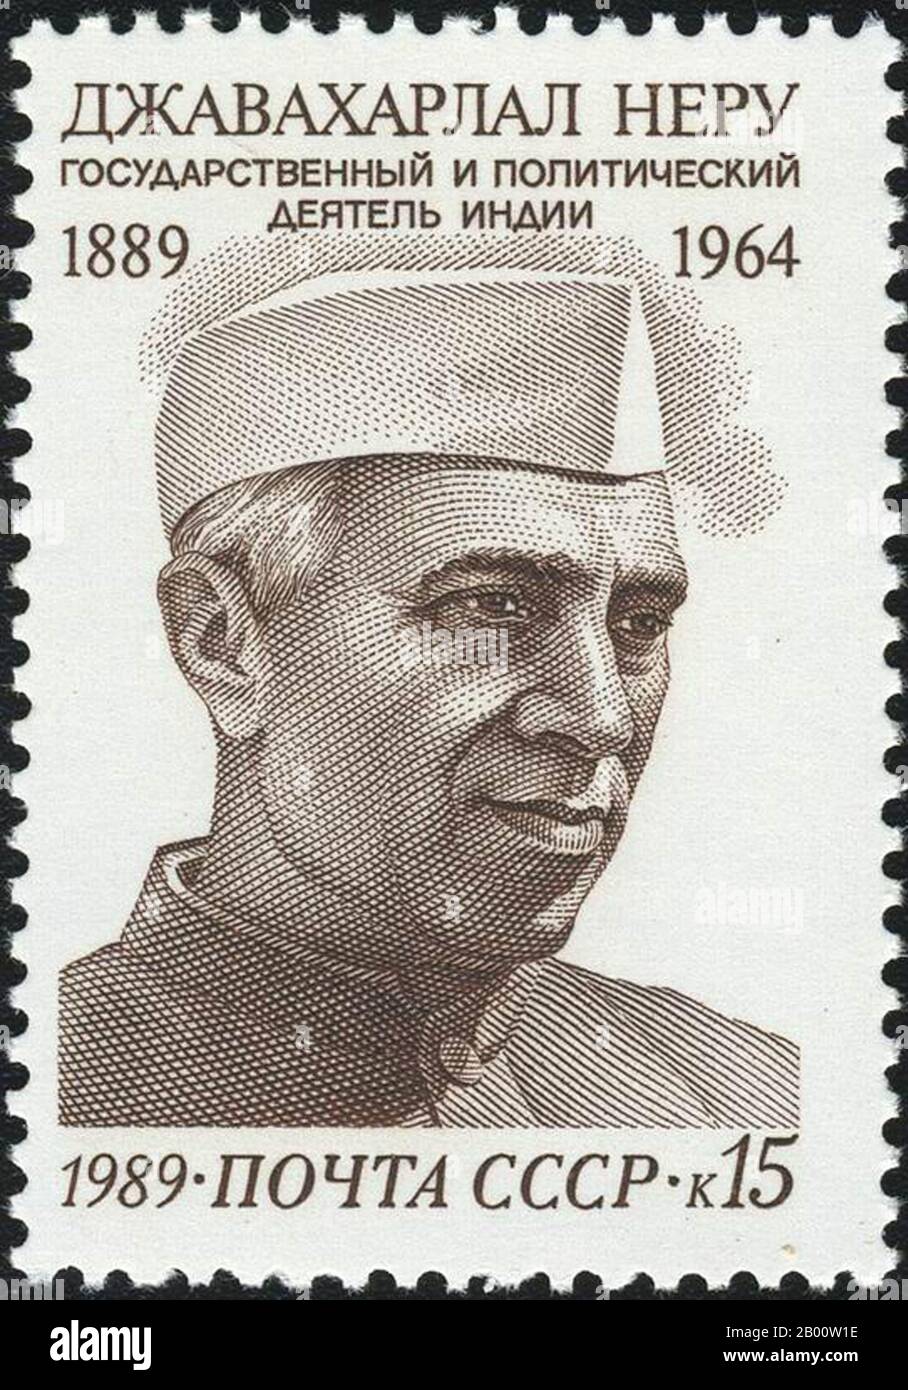 Indien/UdSSR: UdSSR-Stempel von Jawaharlal Nehru, erster Premierminister Indiens (1947-1964). Jawaharlal Nehru (14. November 1889–27. Mai 1964) war ein indischer Staatsmann, der von 1947 bis 1964 der erste (und bis heute am längsten dienende) Premierminister Indiens war. Nehru, eine der führenden Persönlichkeiten der indischen Unabhängigkeitsbewegung, wurde von der Kongresspartei gewählt, um das Amt des unabhängigen indischen Premierministers zu übernehmen, und wurde wiedergewählt, als die Kongresspartei Indiens erste Parlamentswahlen im Jahr 1952 gewann. Er war auch einer der Gründer der Blockfreien Bewegung. Stockfoto